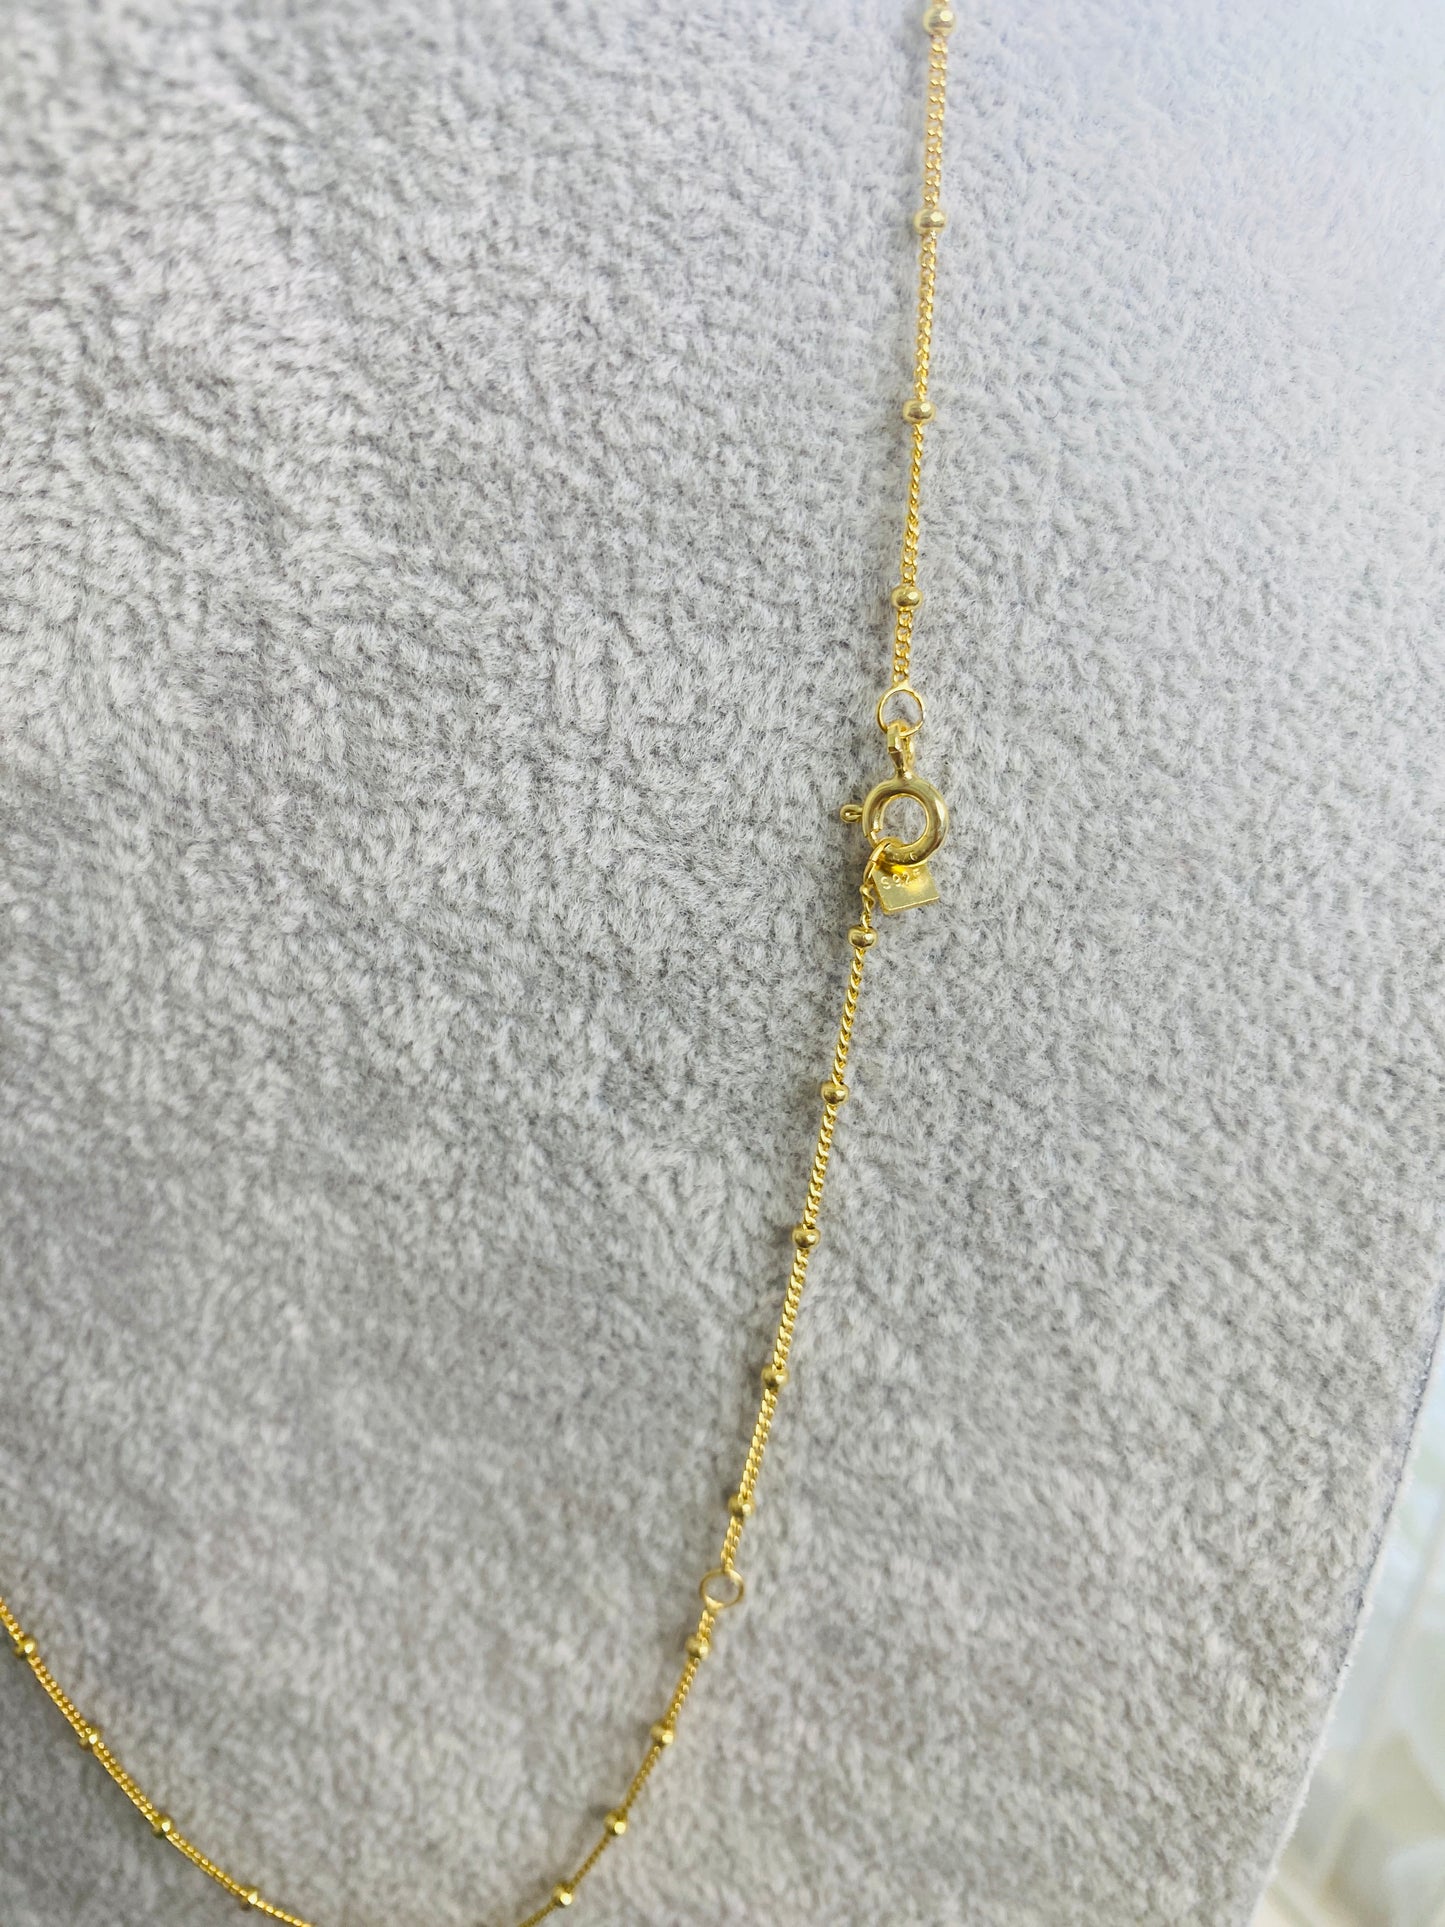 Custom initial & pendant necklace